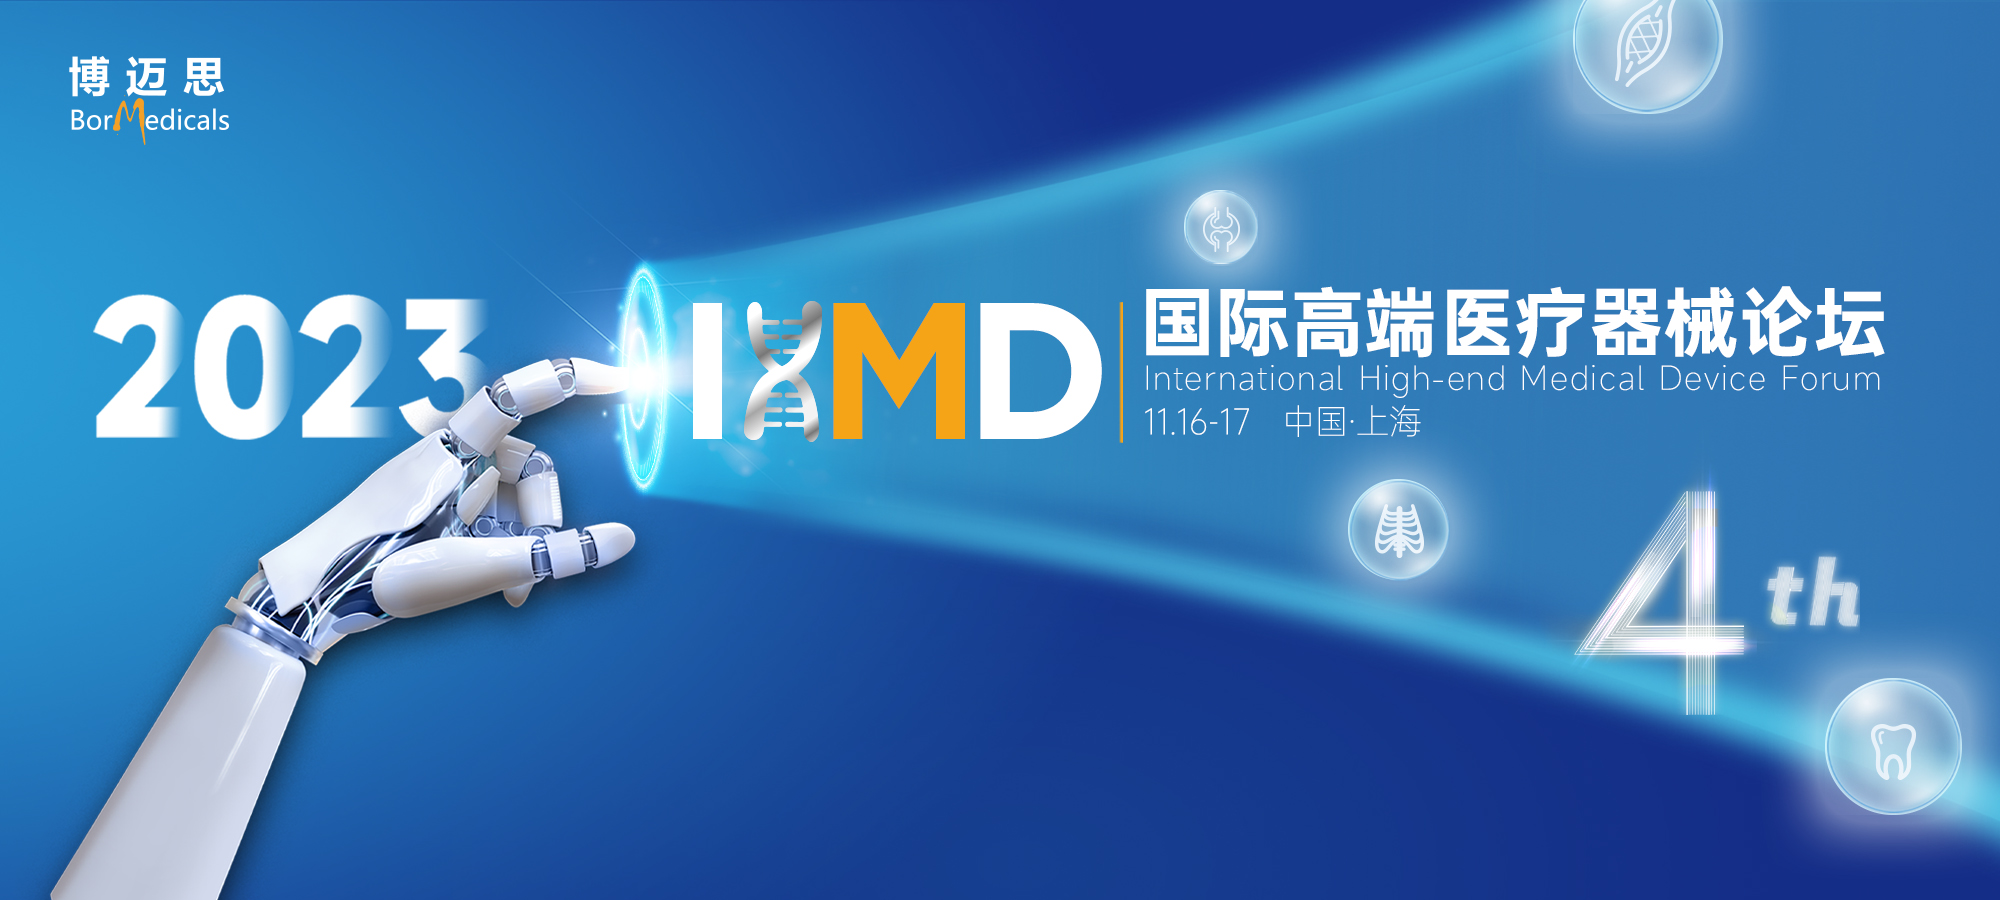 IHMD第四届国际高端医疗器械论坛